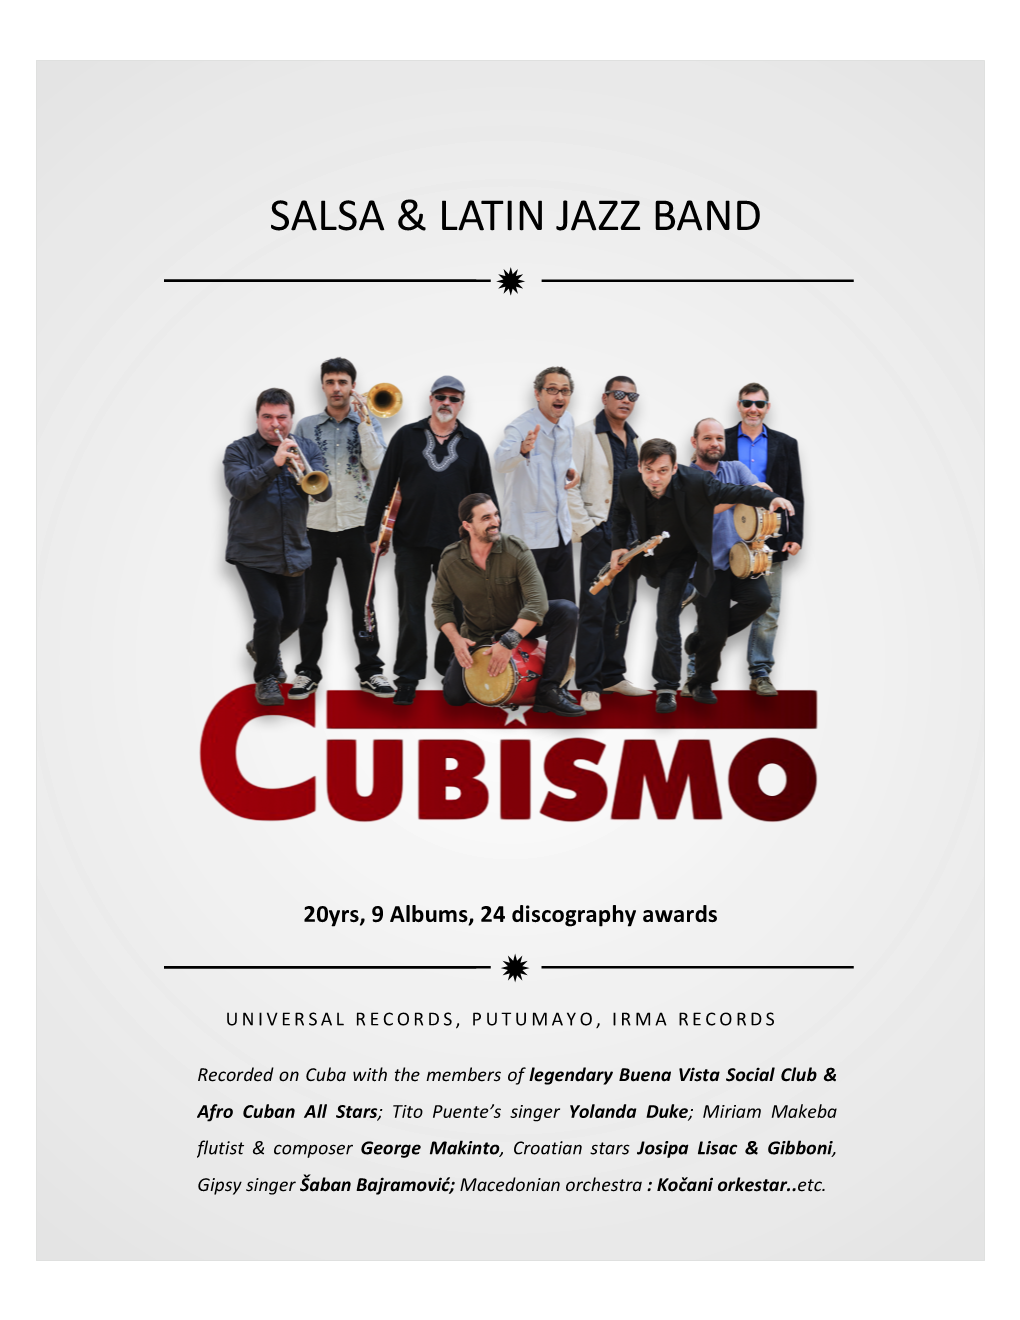 Salsa & Latin Jazz Band